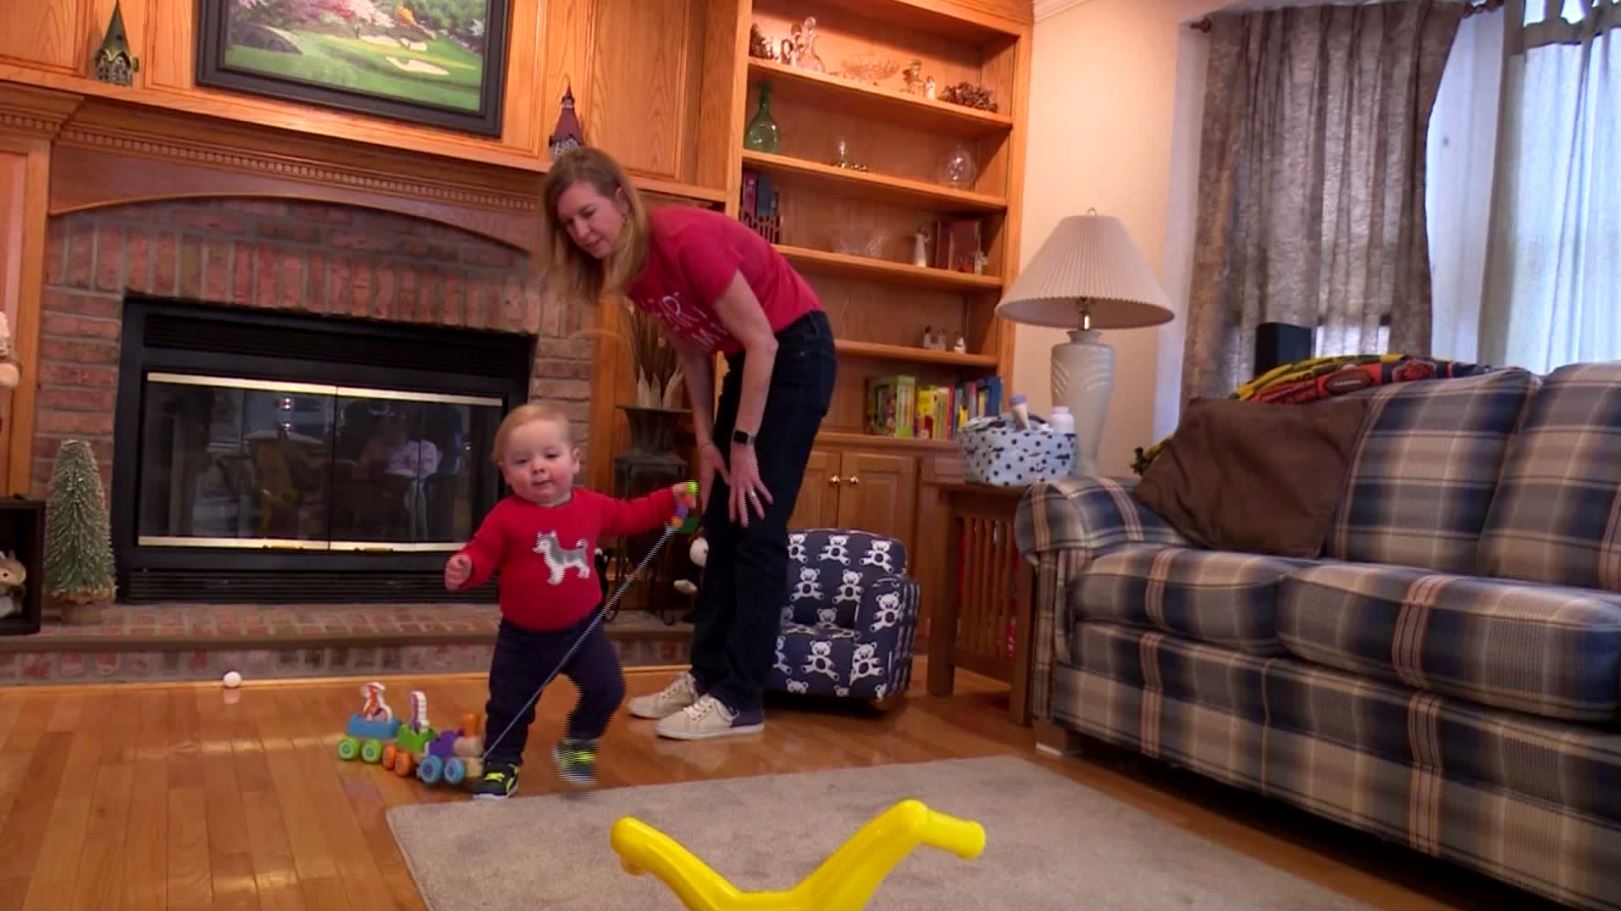 Blaze y su madre en su casa de Peoria, jugando y caminando en la sala (CBS Chicago)